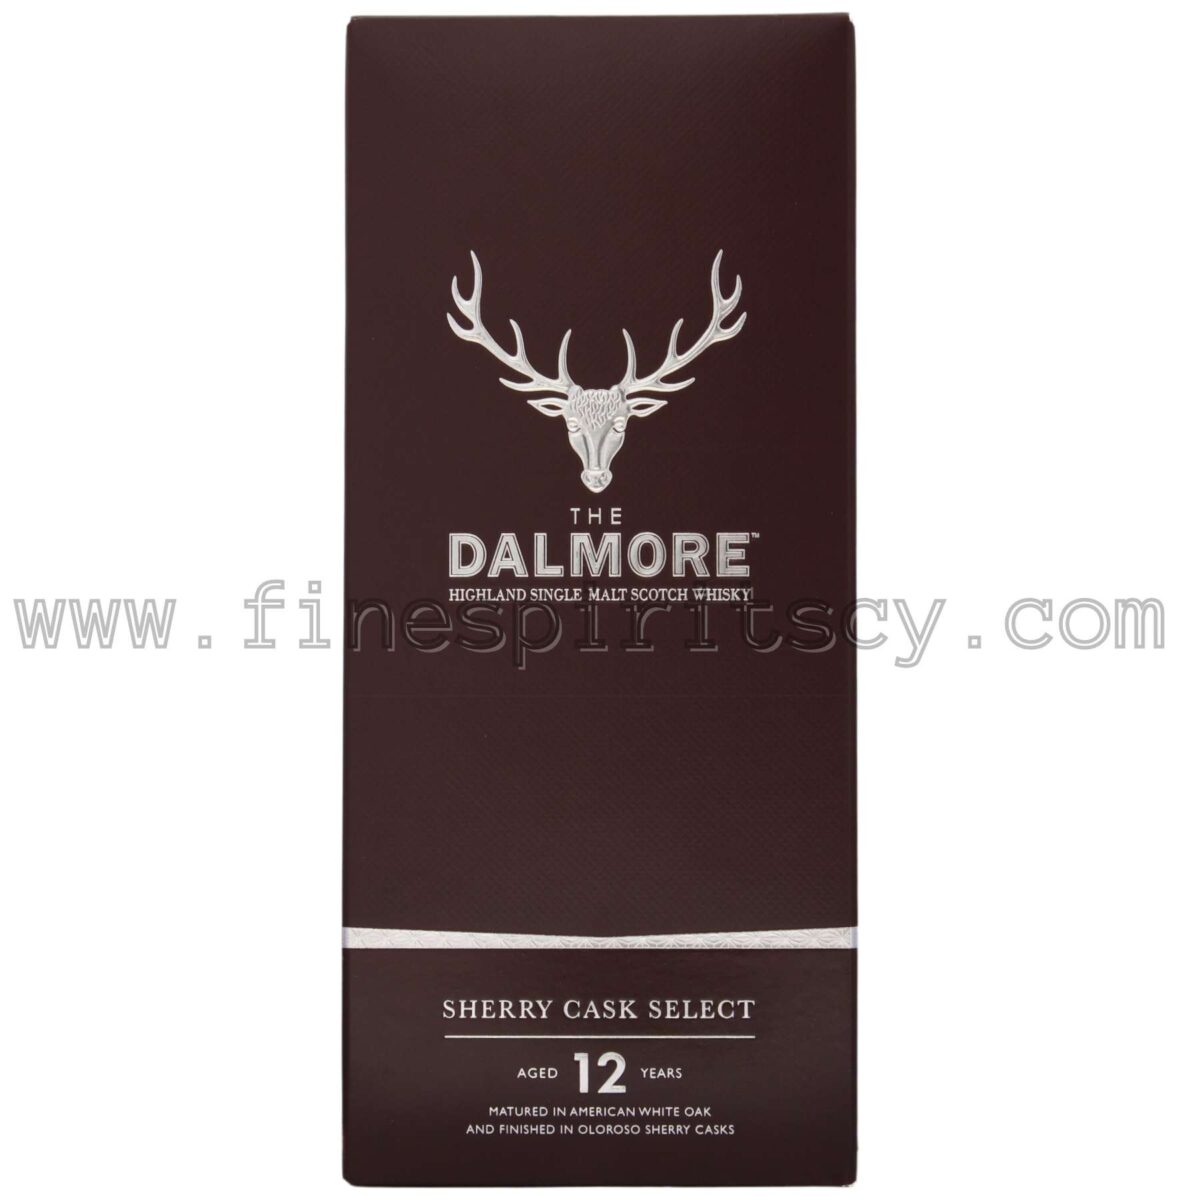 The Dalmore 12YO Highland Single Malt Scotch Whisky Sherry Cask Select